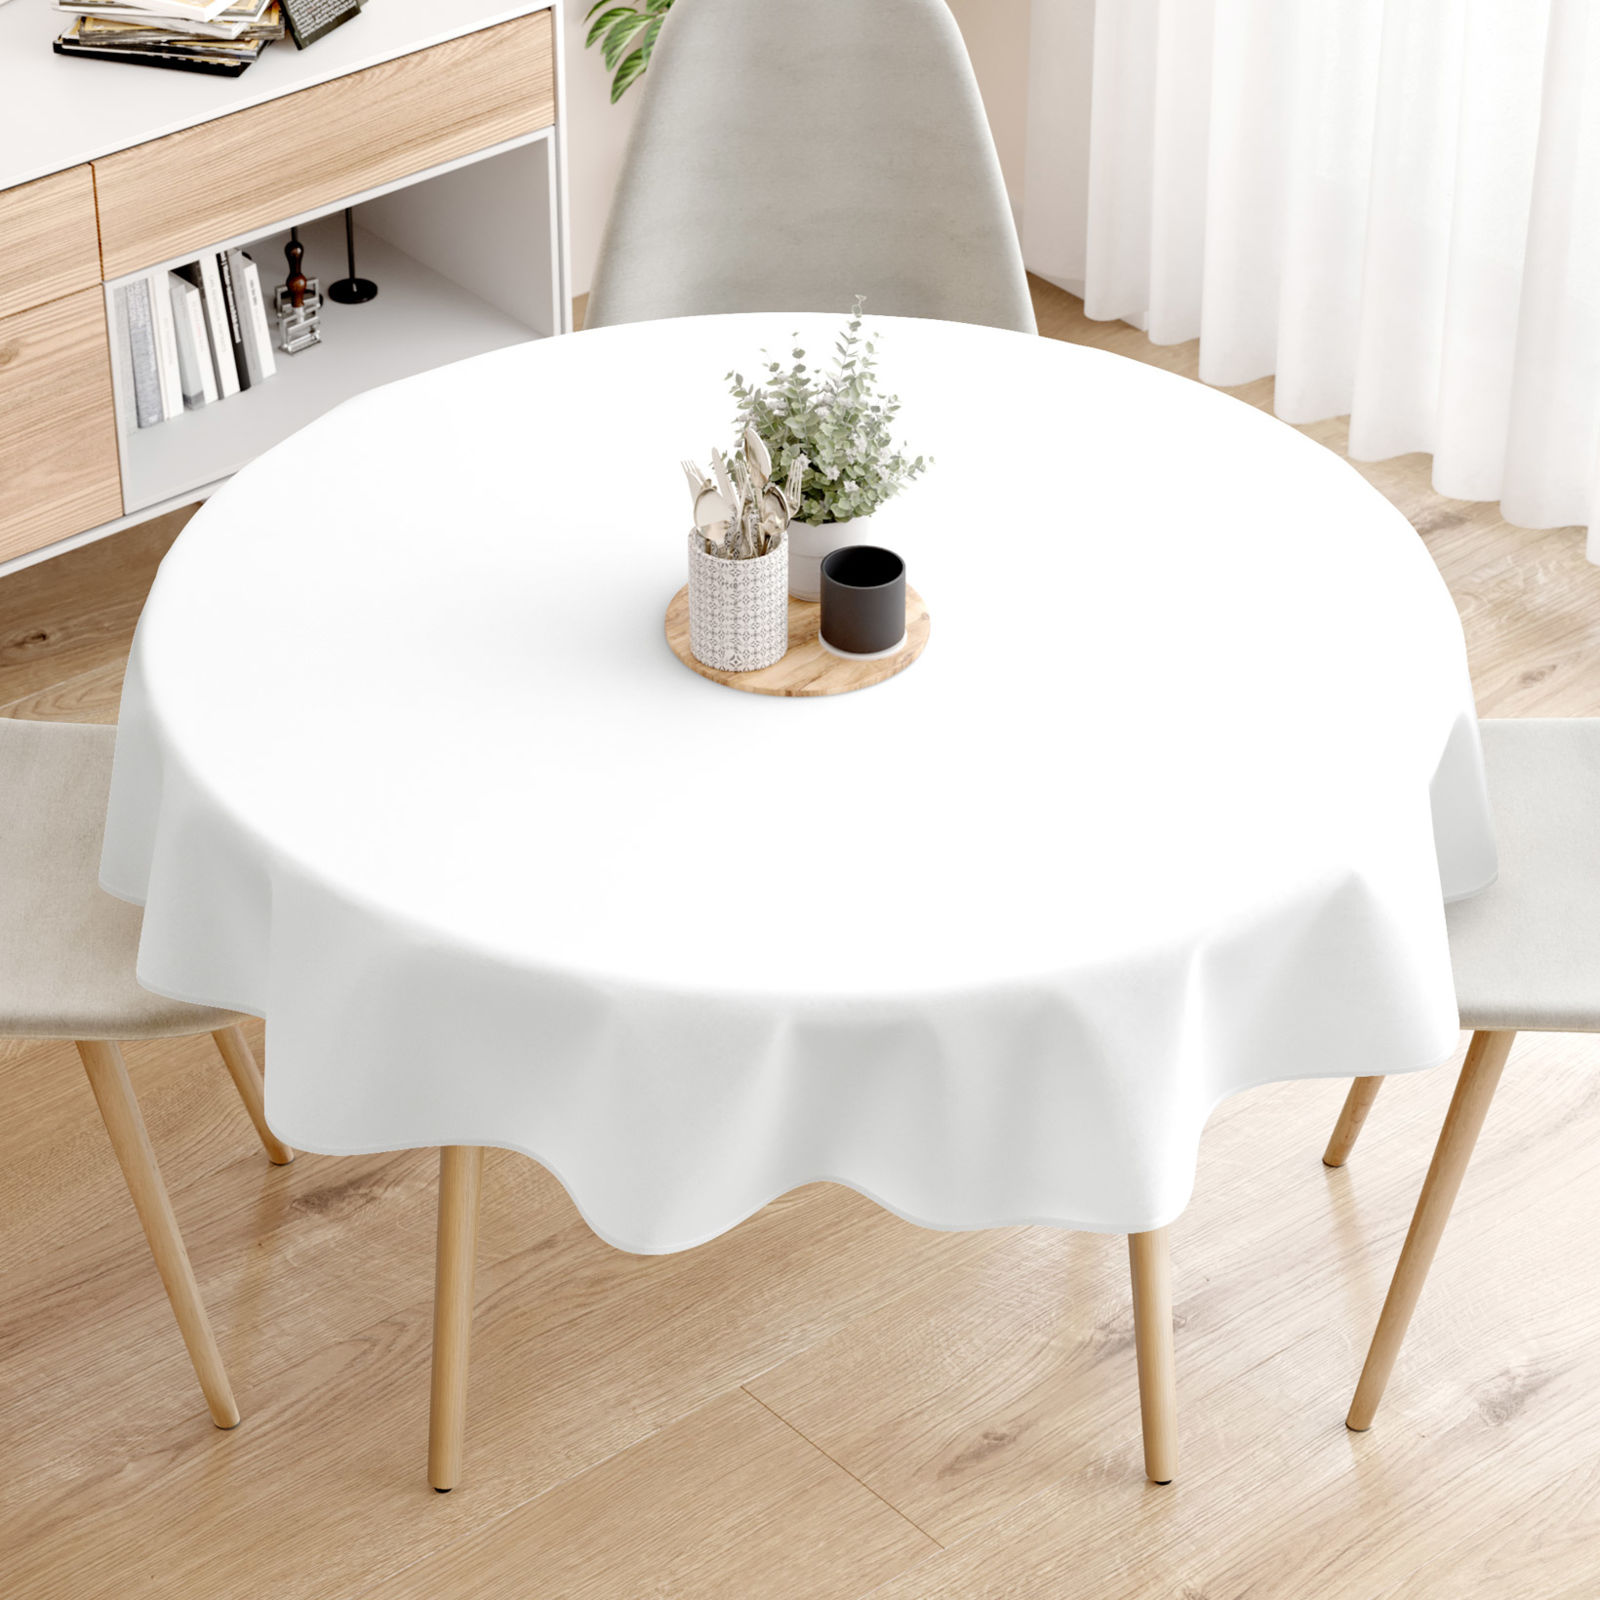 Pamut asztalterítő - fehér - kör alakú